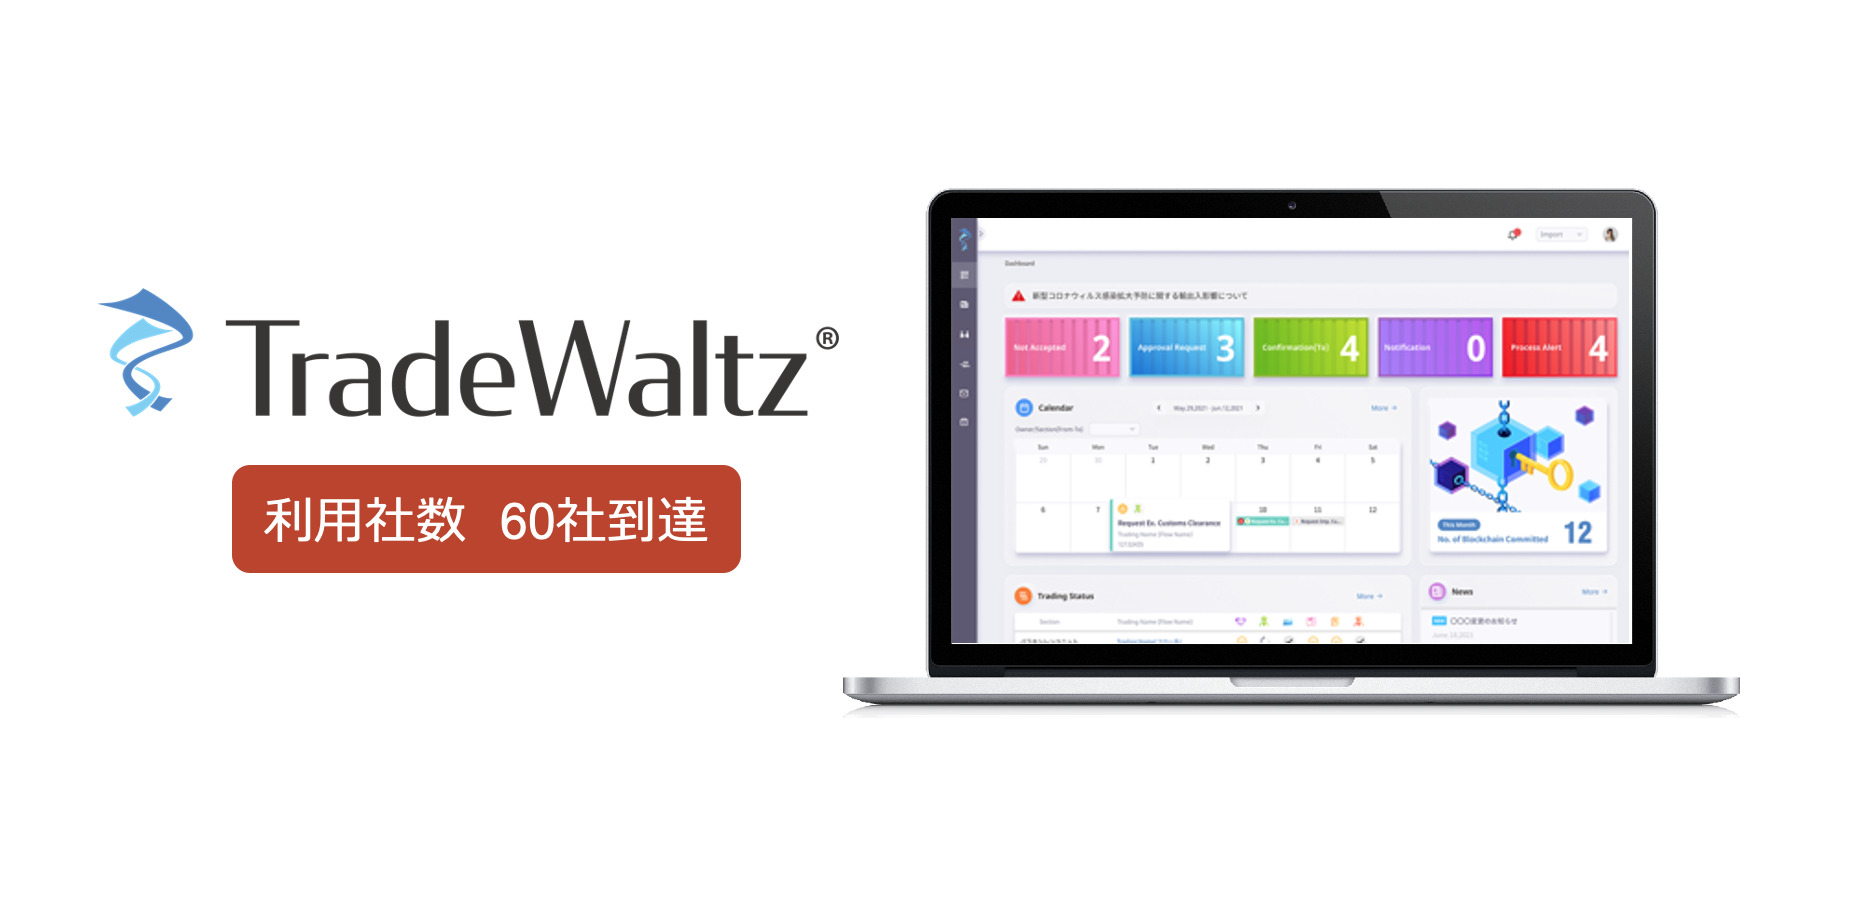 貿易情報連携プラットフォーム「TradeWaltz®」2か月で商用利用社数20社増、計60社到達 ～2022年4月商用版リリース以降、日本市場利用拡大中～